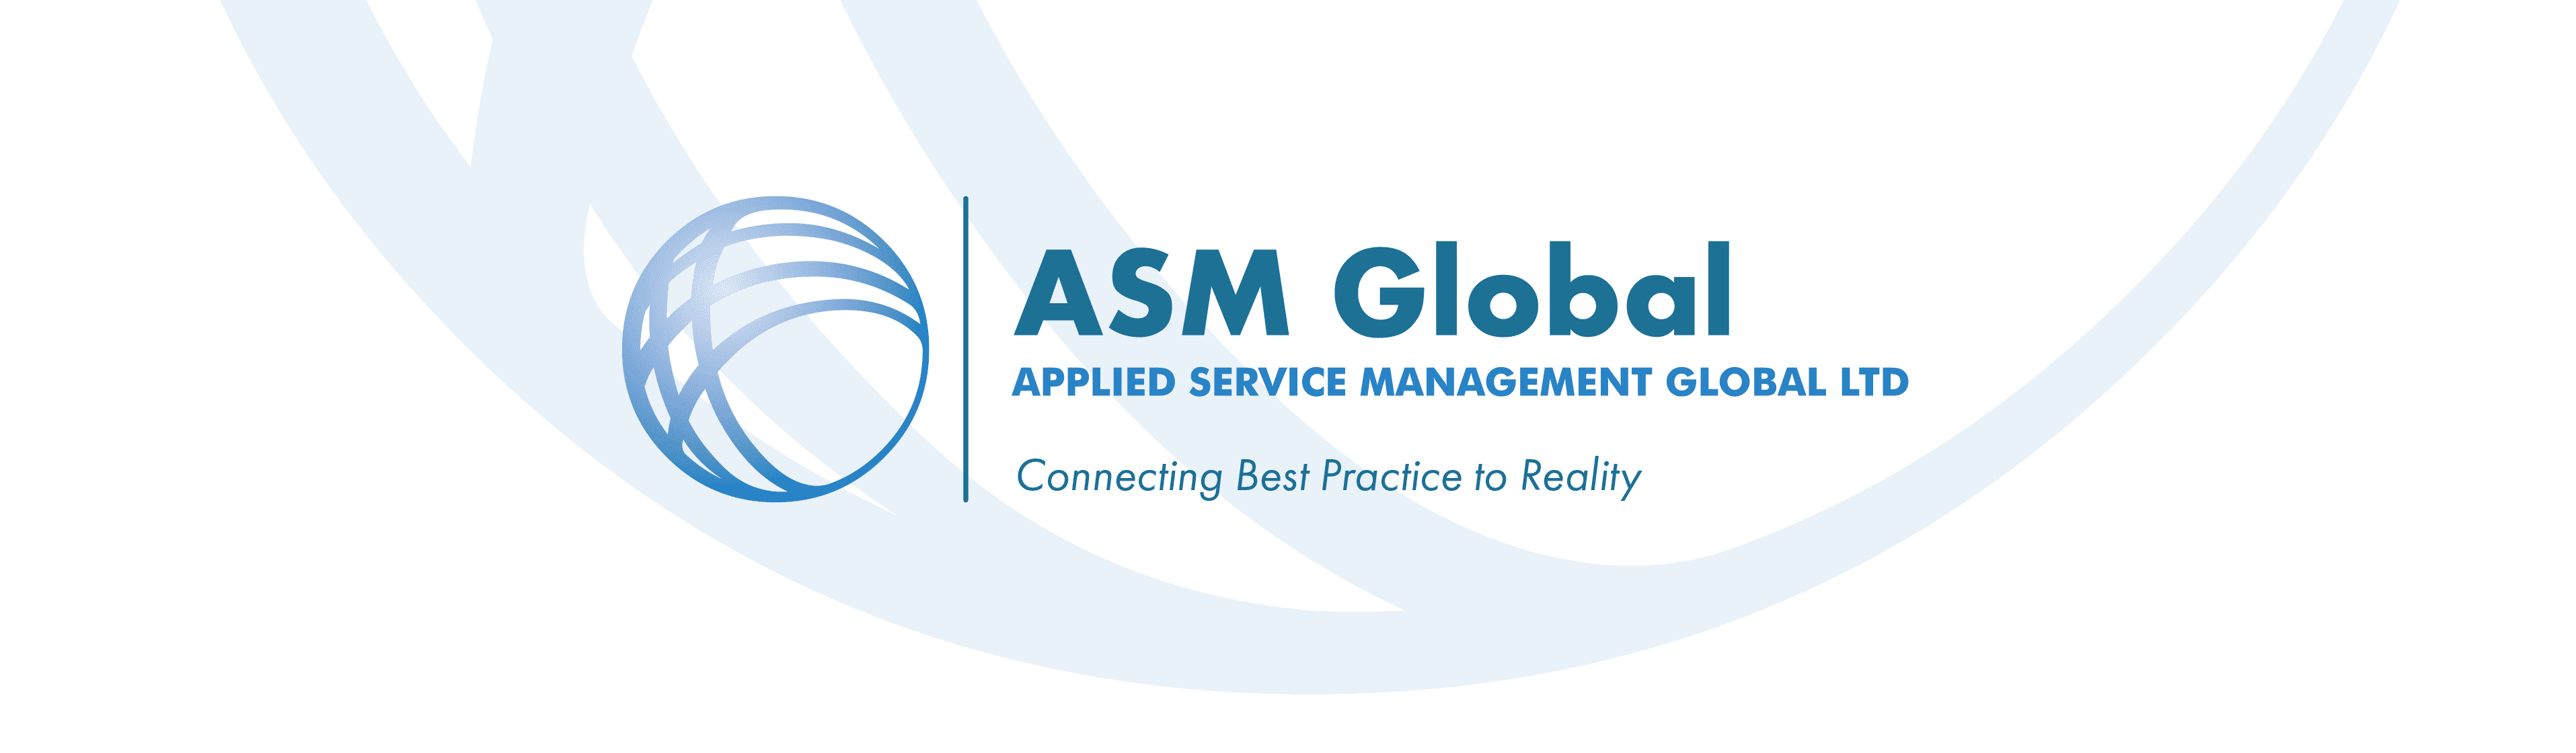 ASMG_Globe_LogoStrapline